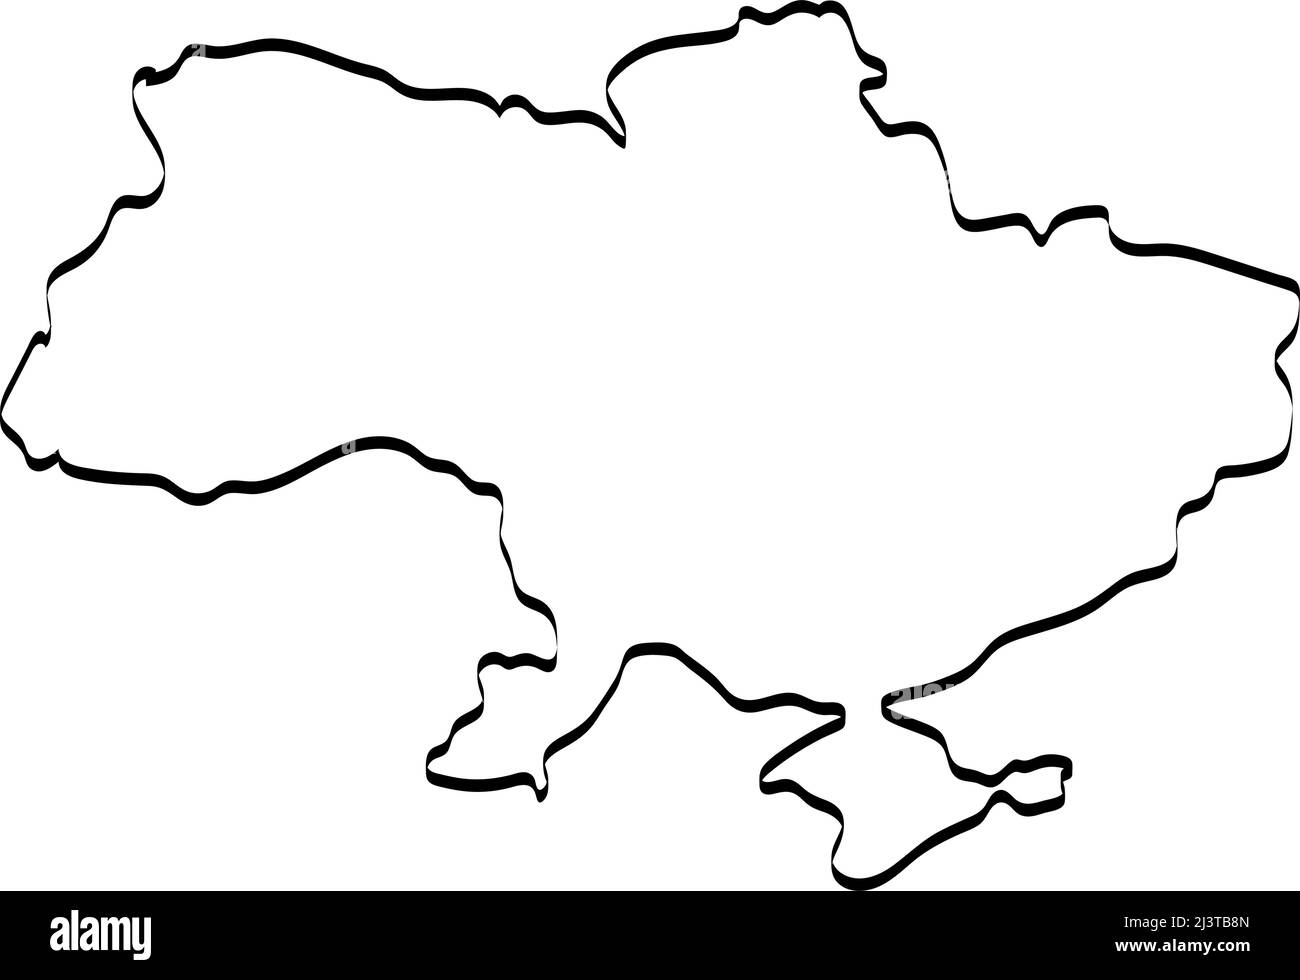 Stop War in Ukraine concept vector illustration. Ukrainian map illustration. Save Ukraine from Russia. Stock Vector